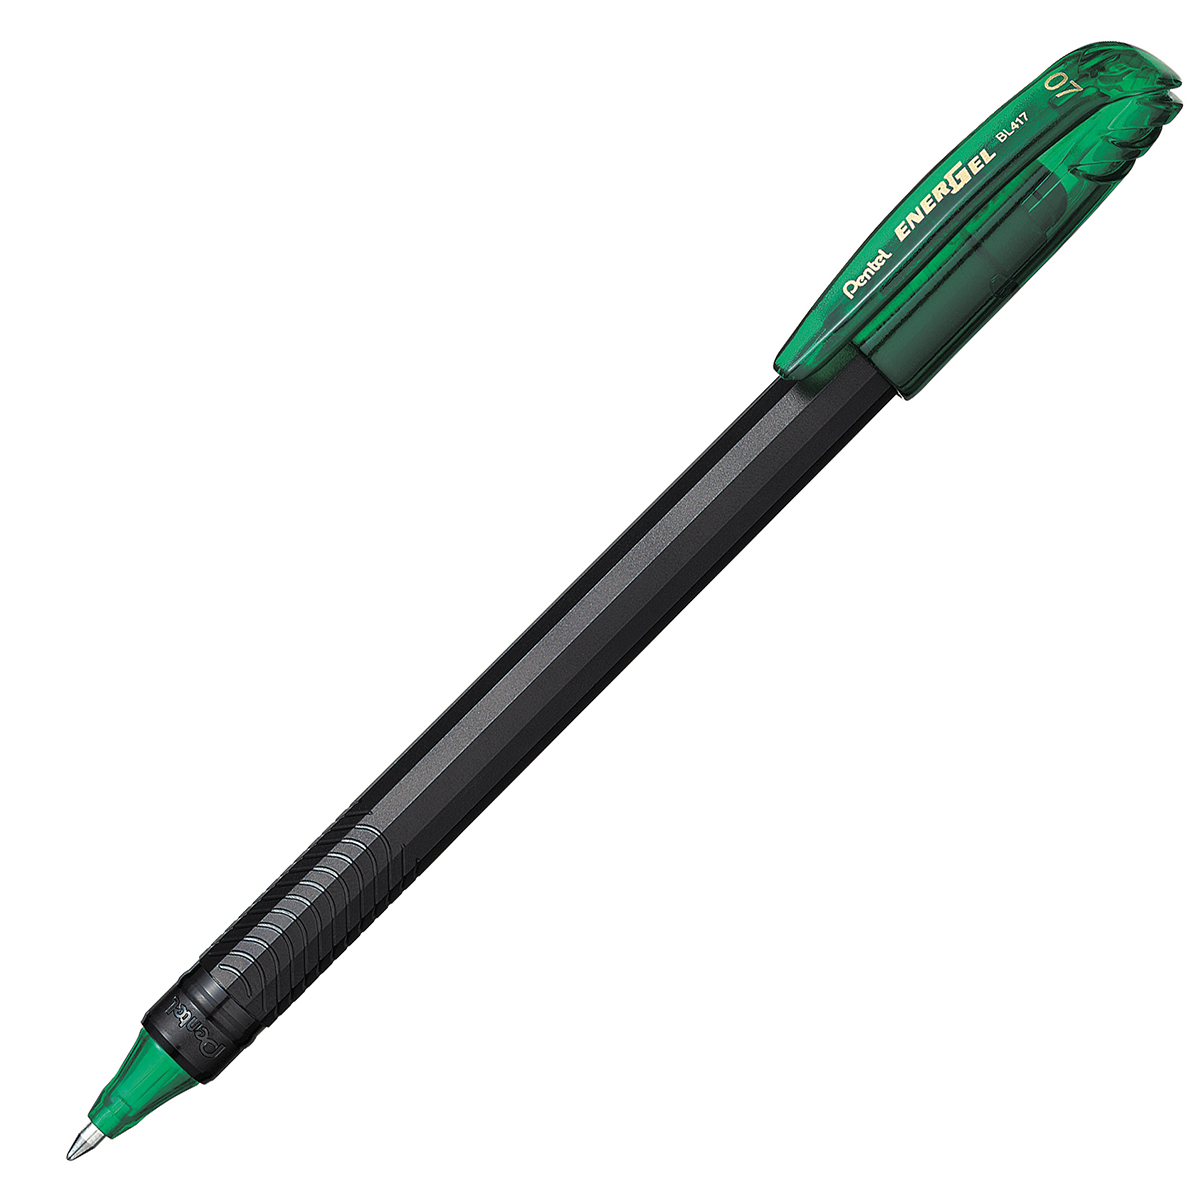 Bolígrafo Pentel energel stick, punto 0. Bolígrafo Pentel energel tinta gel color verde, 0.7 mm secado rápido, peso ligero con 12 lados, hecho de 62% material reciclado. la tapa indica el color de la tinta                                                                                            7 mm (mediano), tinta verde, 1 pieza     - BL417-D